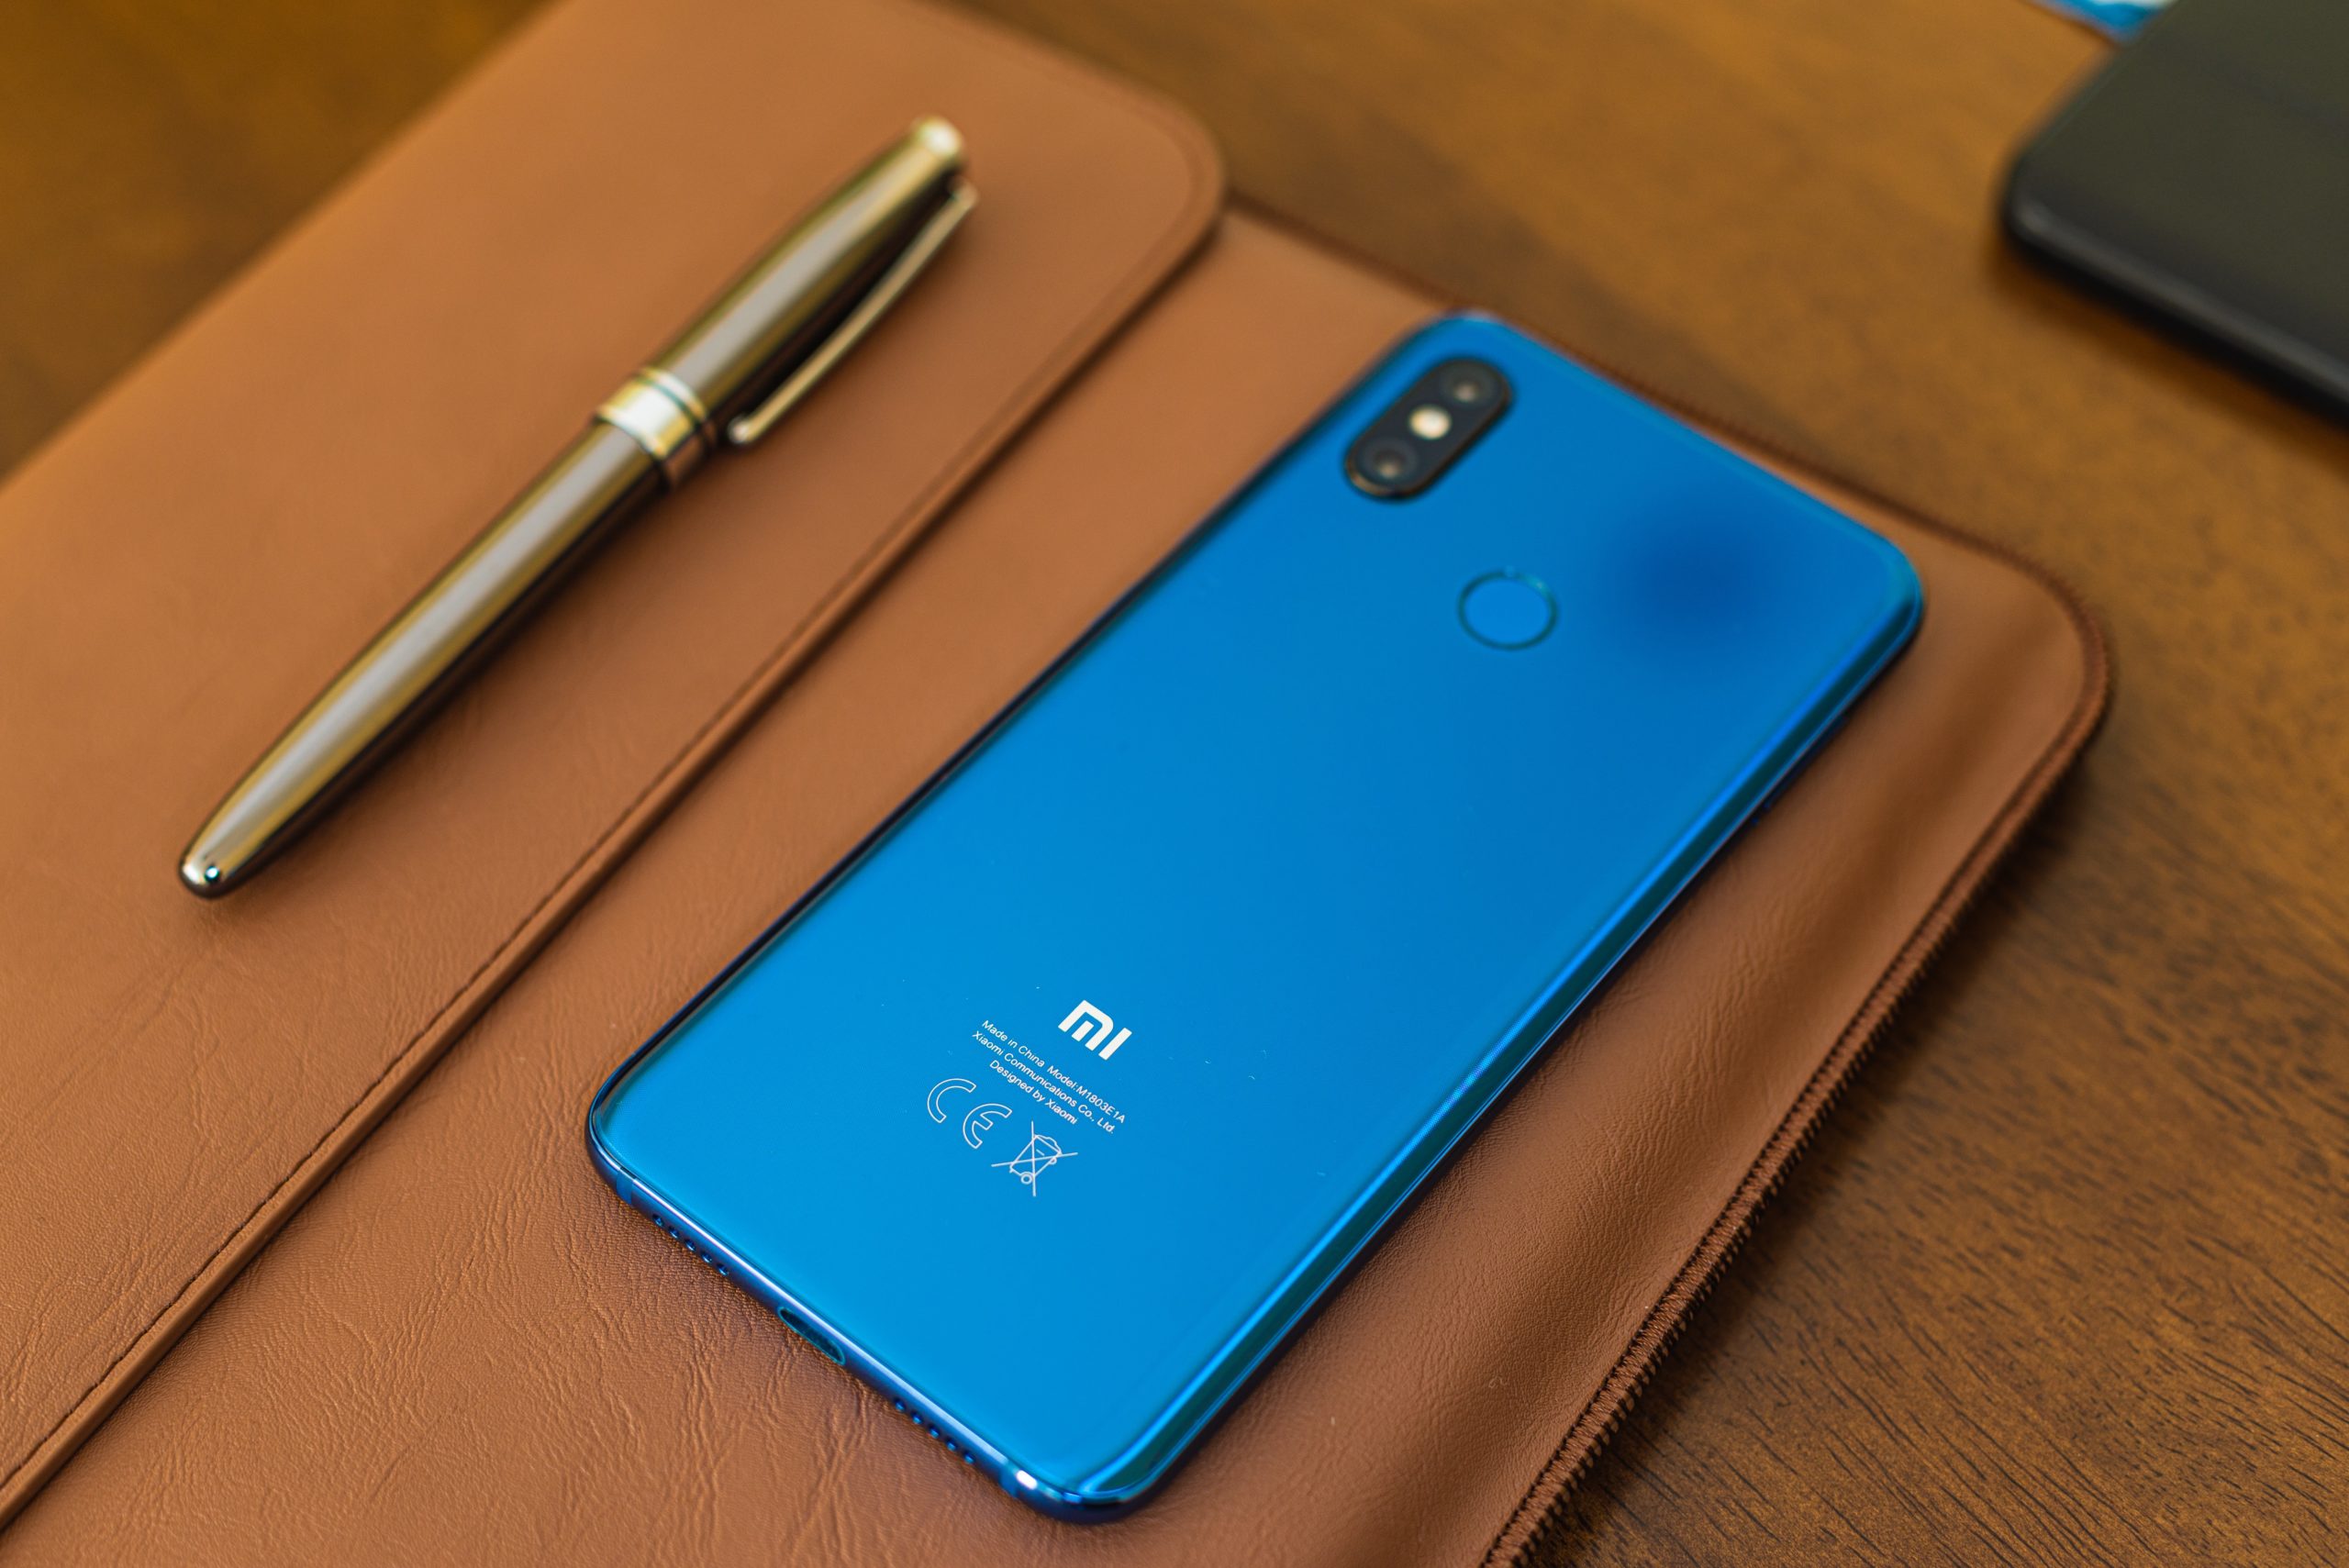 Top Xiaomi Smartphone: Let Us Discuss The Top Xiaomi Phones Of 2019